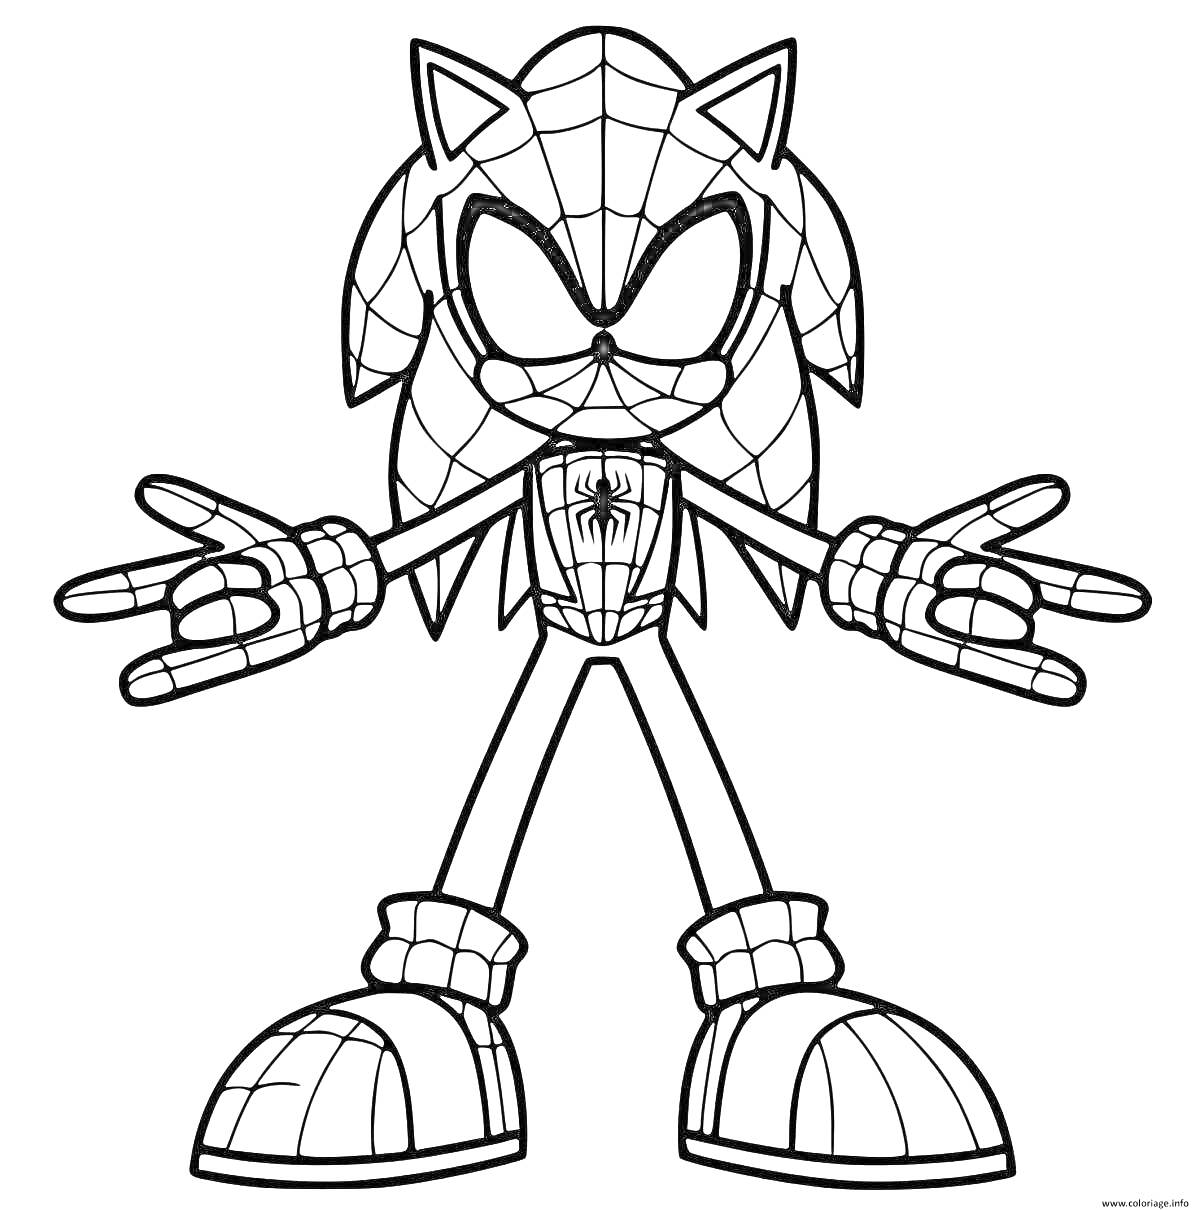 Раскраска Соник в костюме Человека-паука с расставленными руками